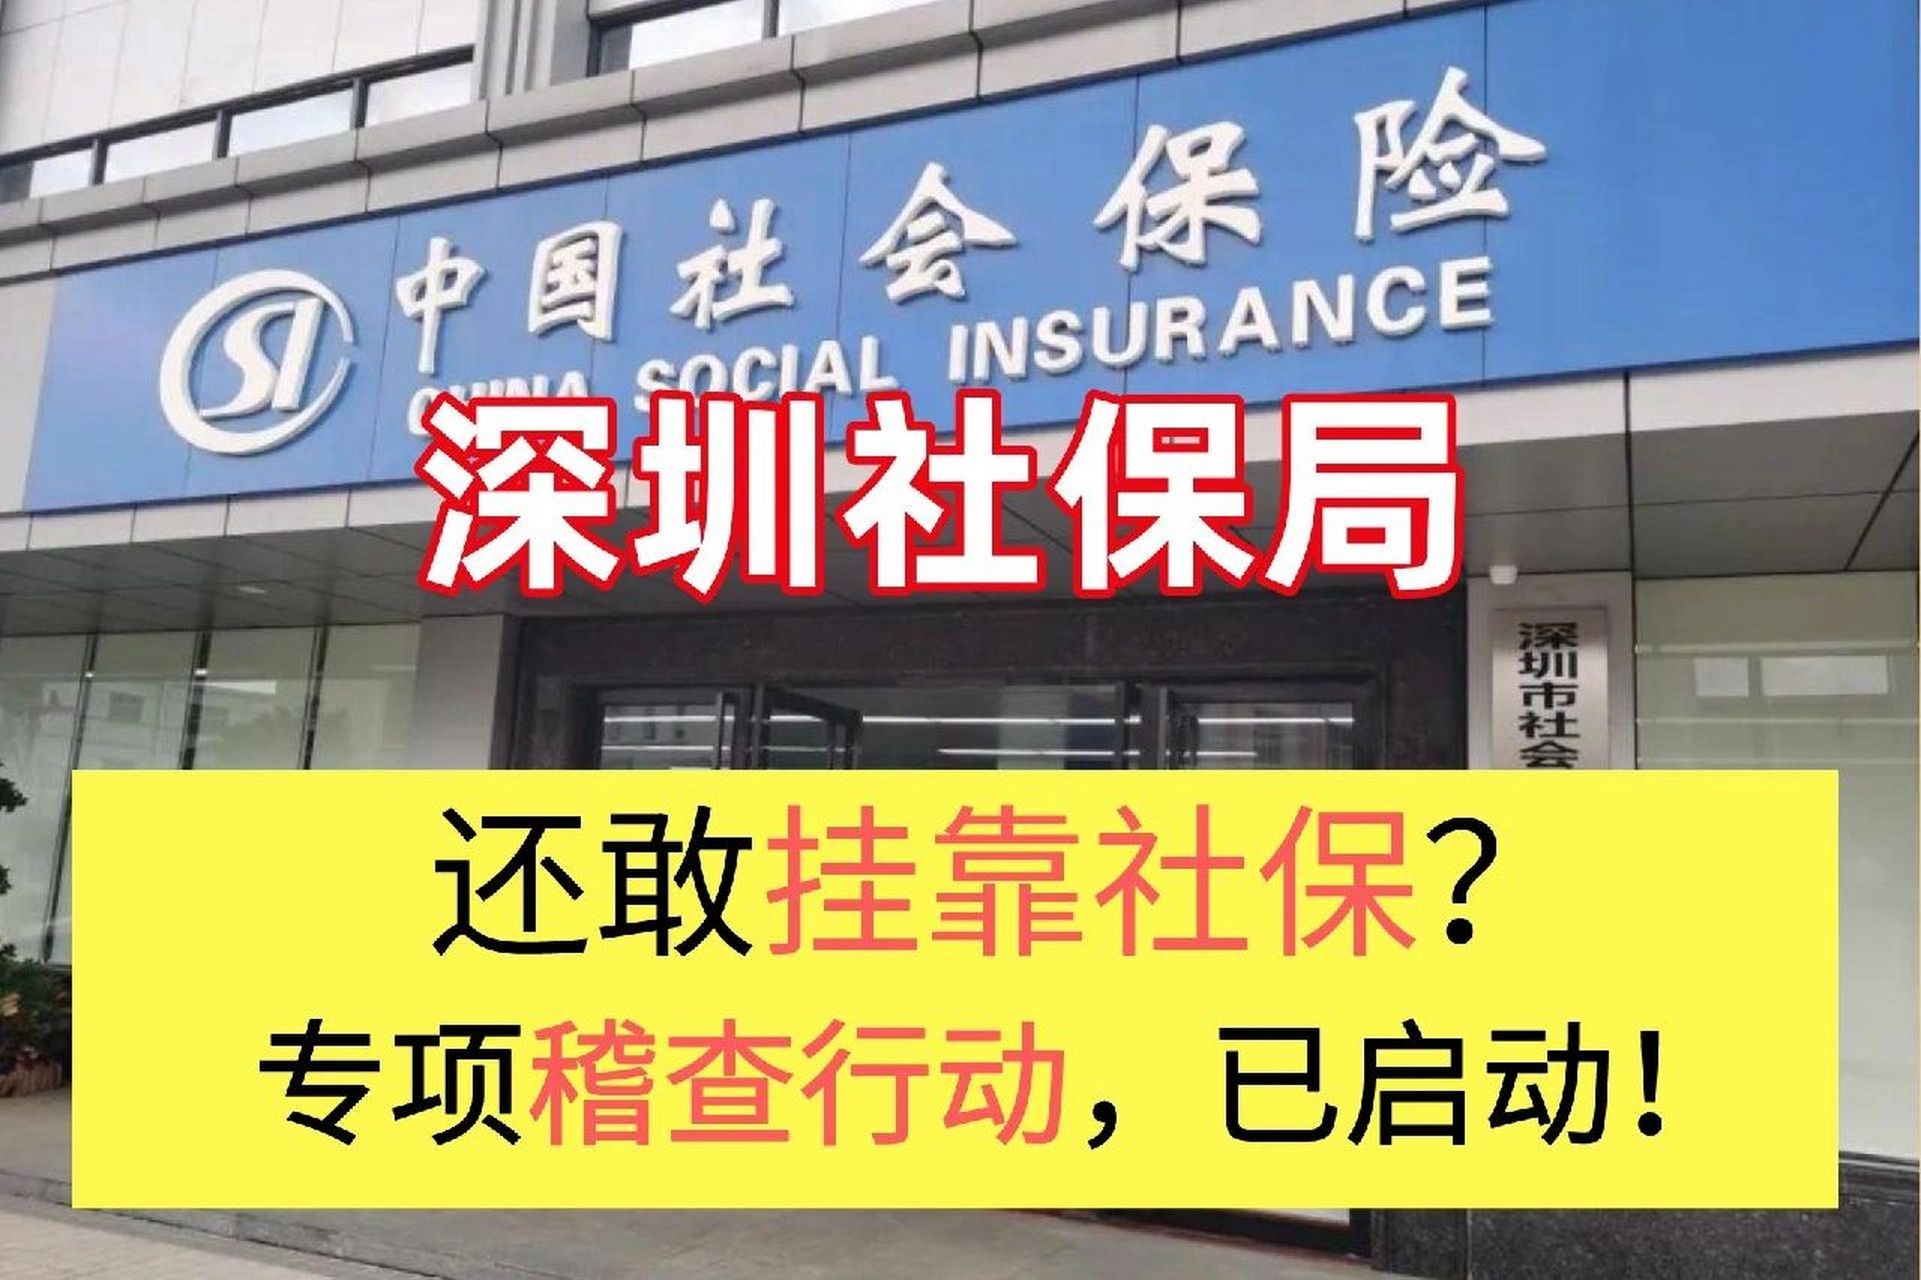 78深圳社保局已经启动针对社保挂靠的专项稽查行动